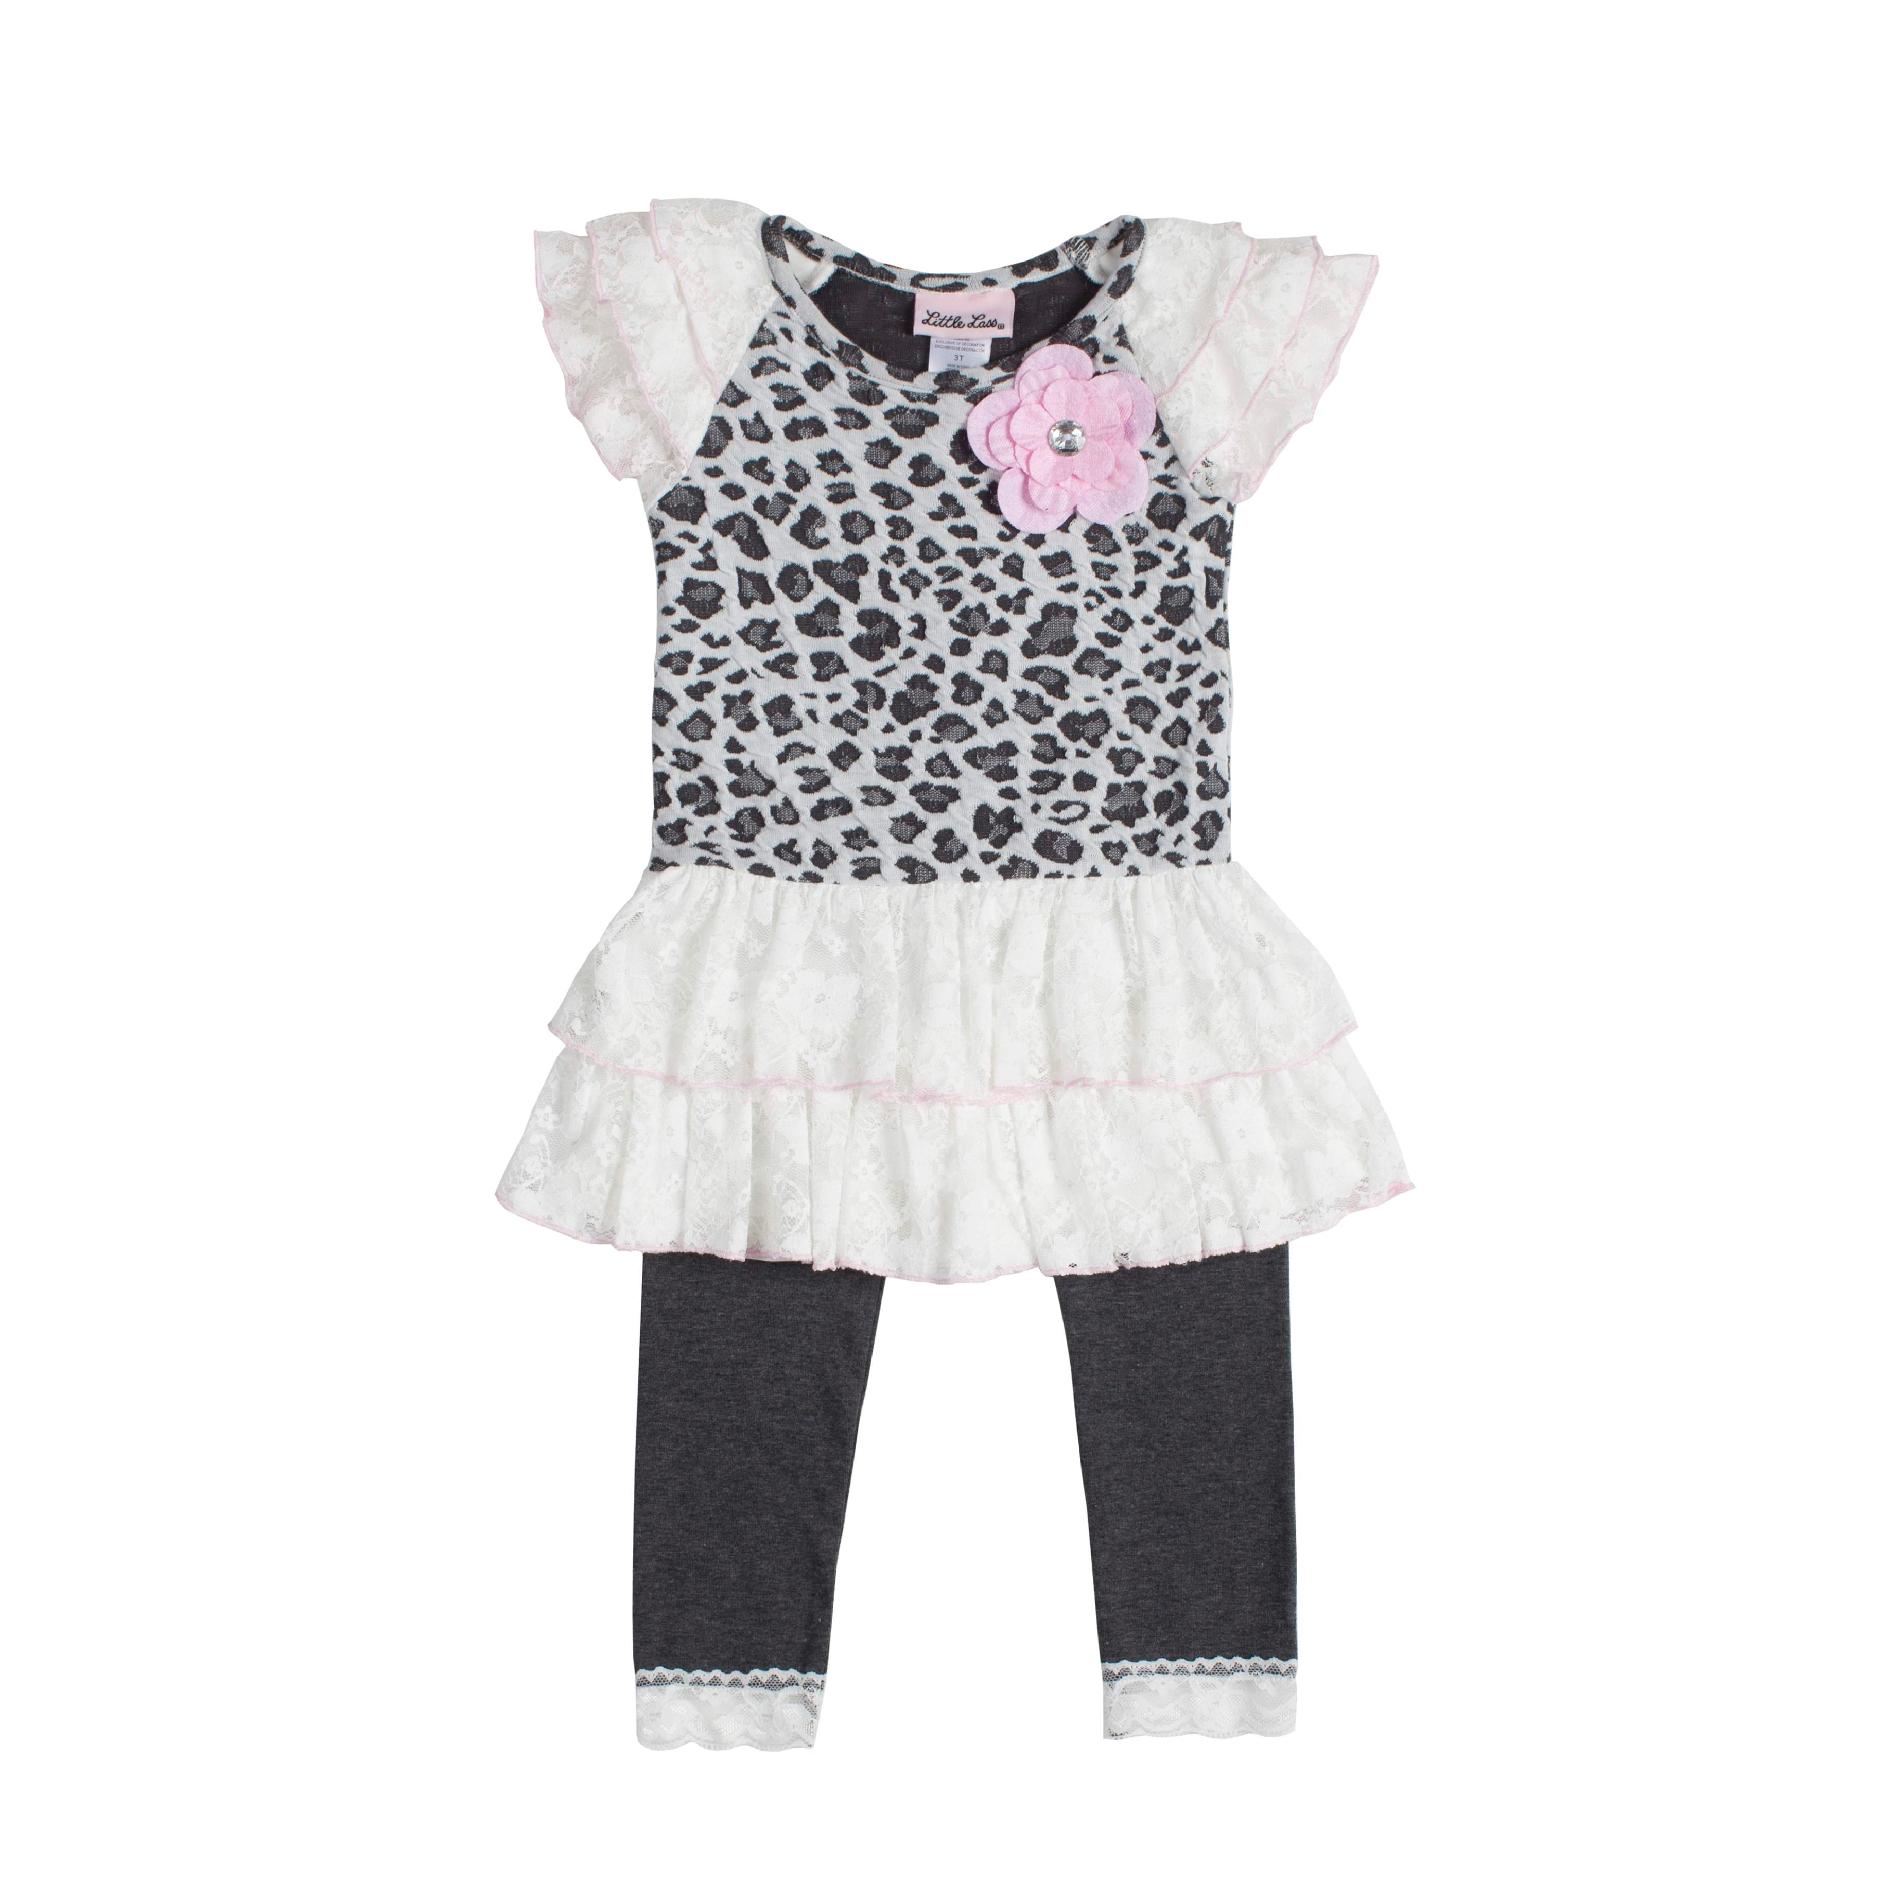 Little Lass Infant & Toddler Girl's Tunic & Leggings - Leopard Print